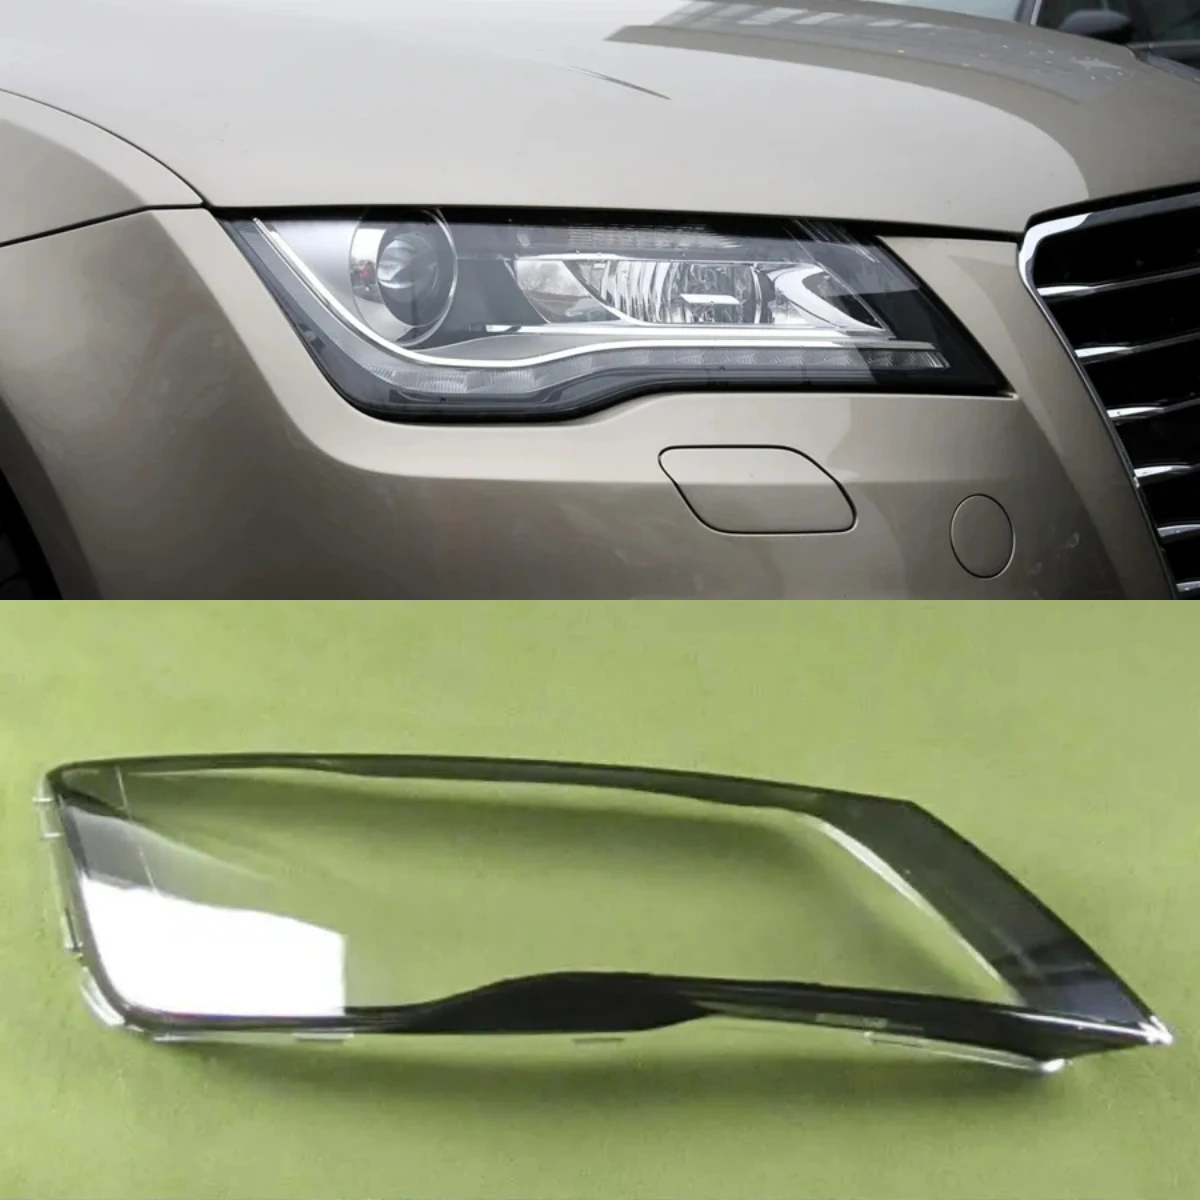 

Прозрачная крышка налобного фонаря для Audi A7 RS7, корпус налобного фонаря, замена оригинального абажура из плексигласа 2011 - 2014